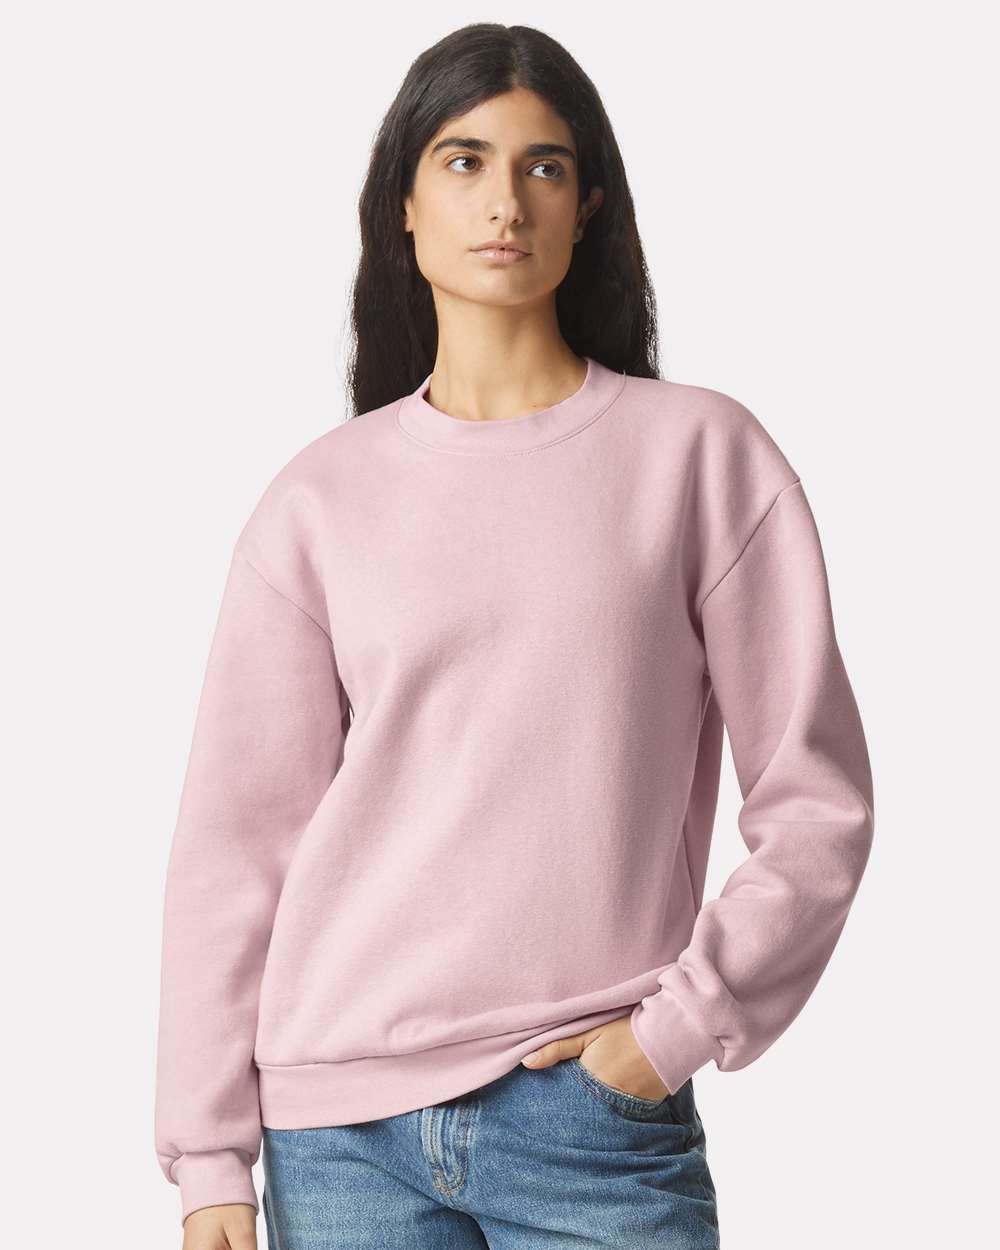 Caracilia Women Hoodies Oversized Sweatshirts Fleece Sweaters Long